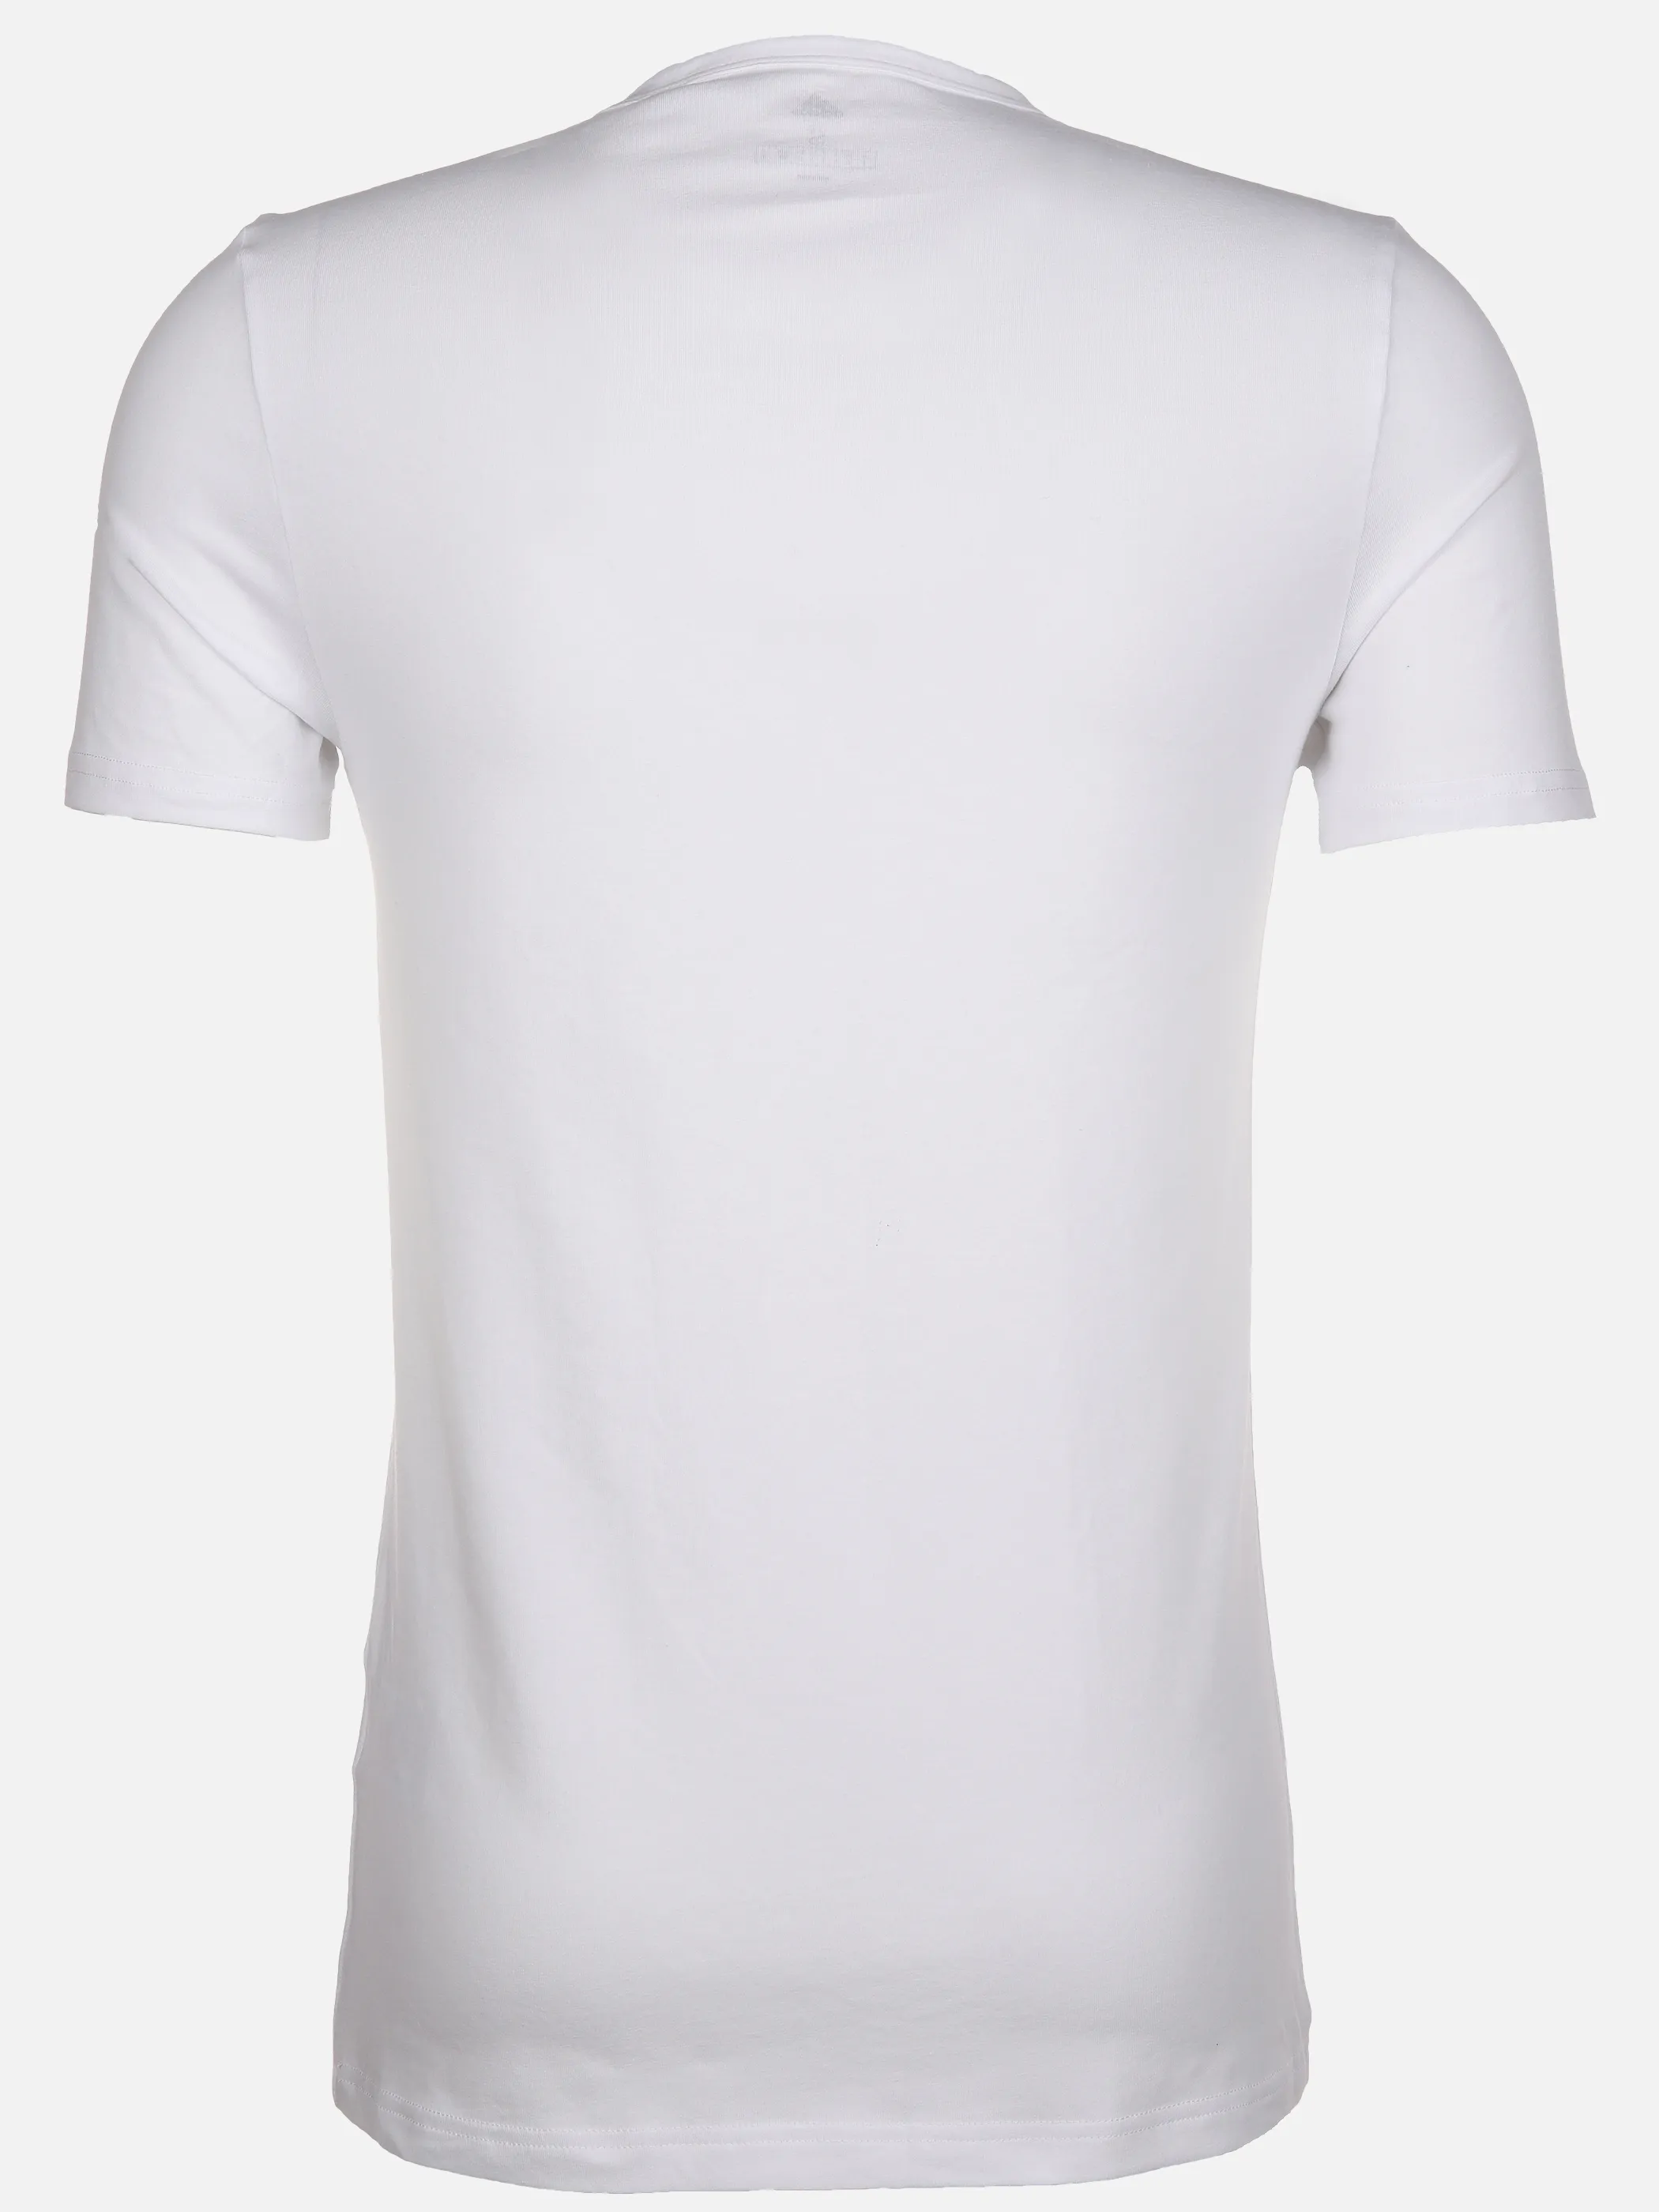 Adidas 4A2M04 Crew Neck T-Shirt (2PK) Weiß 894517 100 2